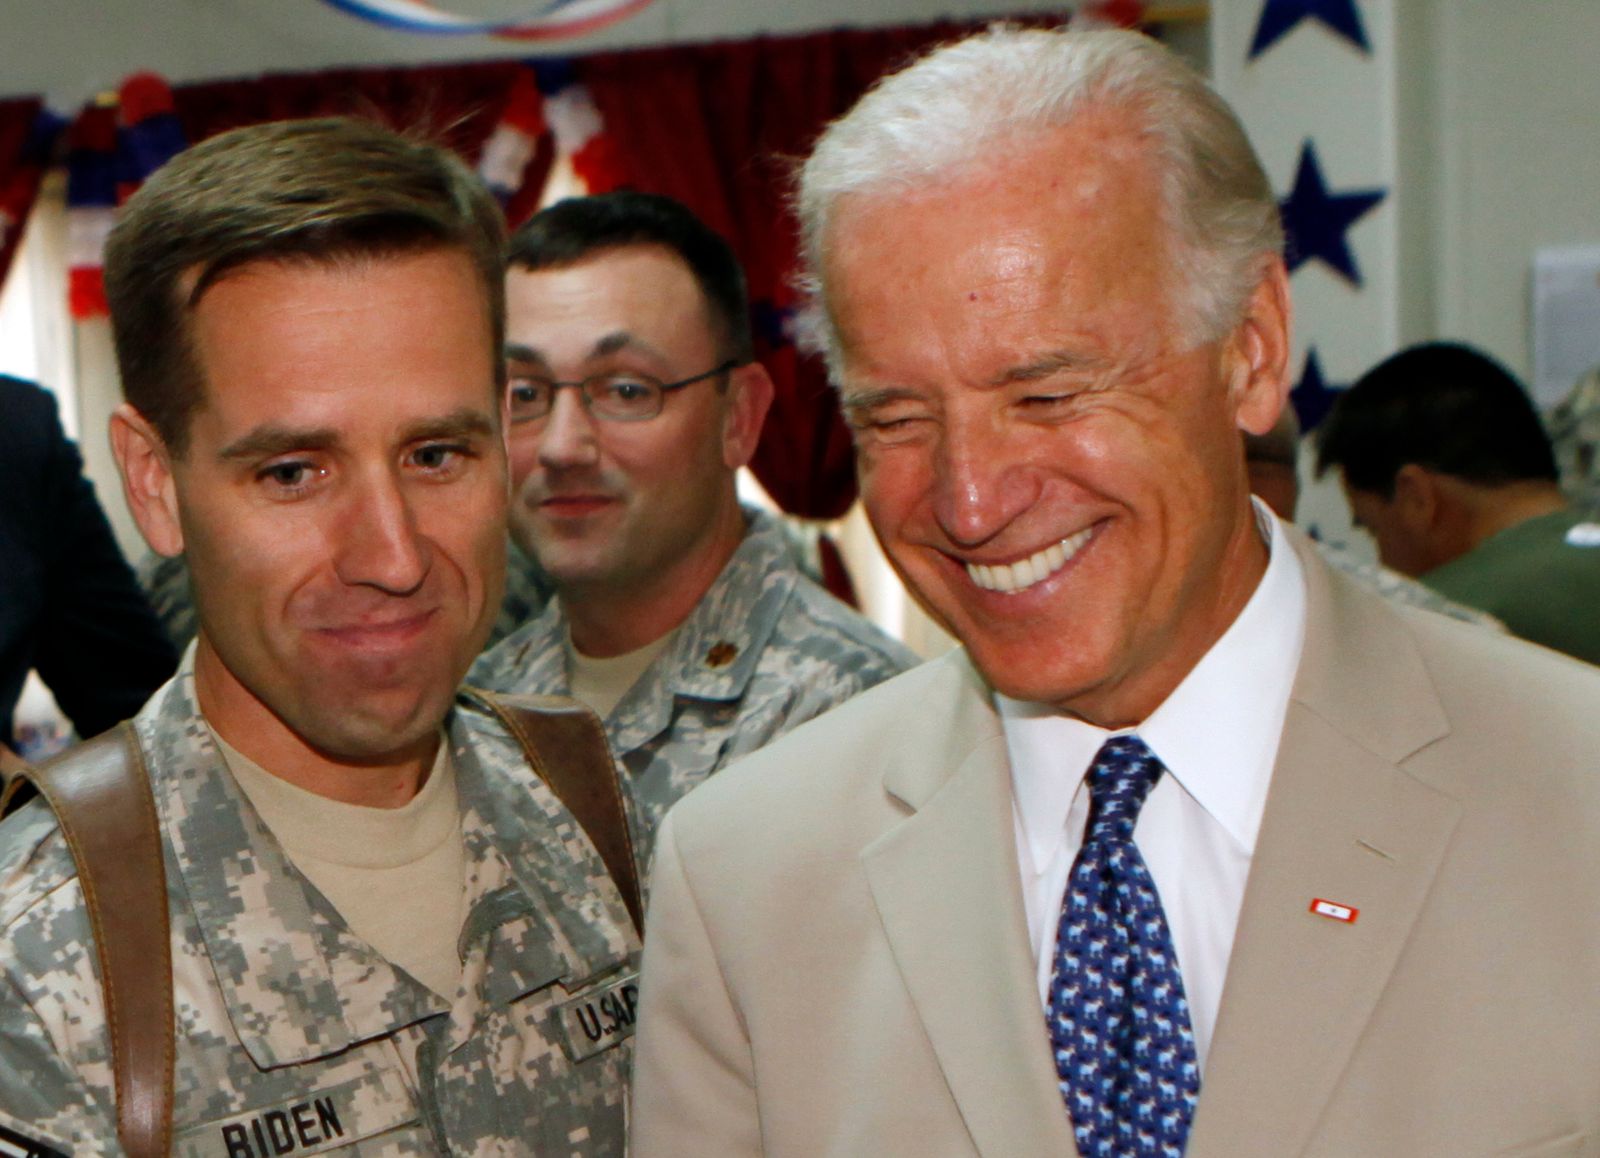 جو بايدن، حين كان نائباً للرئيس الأميركي، مع نجله بو، النقيب في الجيش الأميركي، خلال خدمته في بغداد - 4 يوليو 2009 - ASSOCIATED PRESS